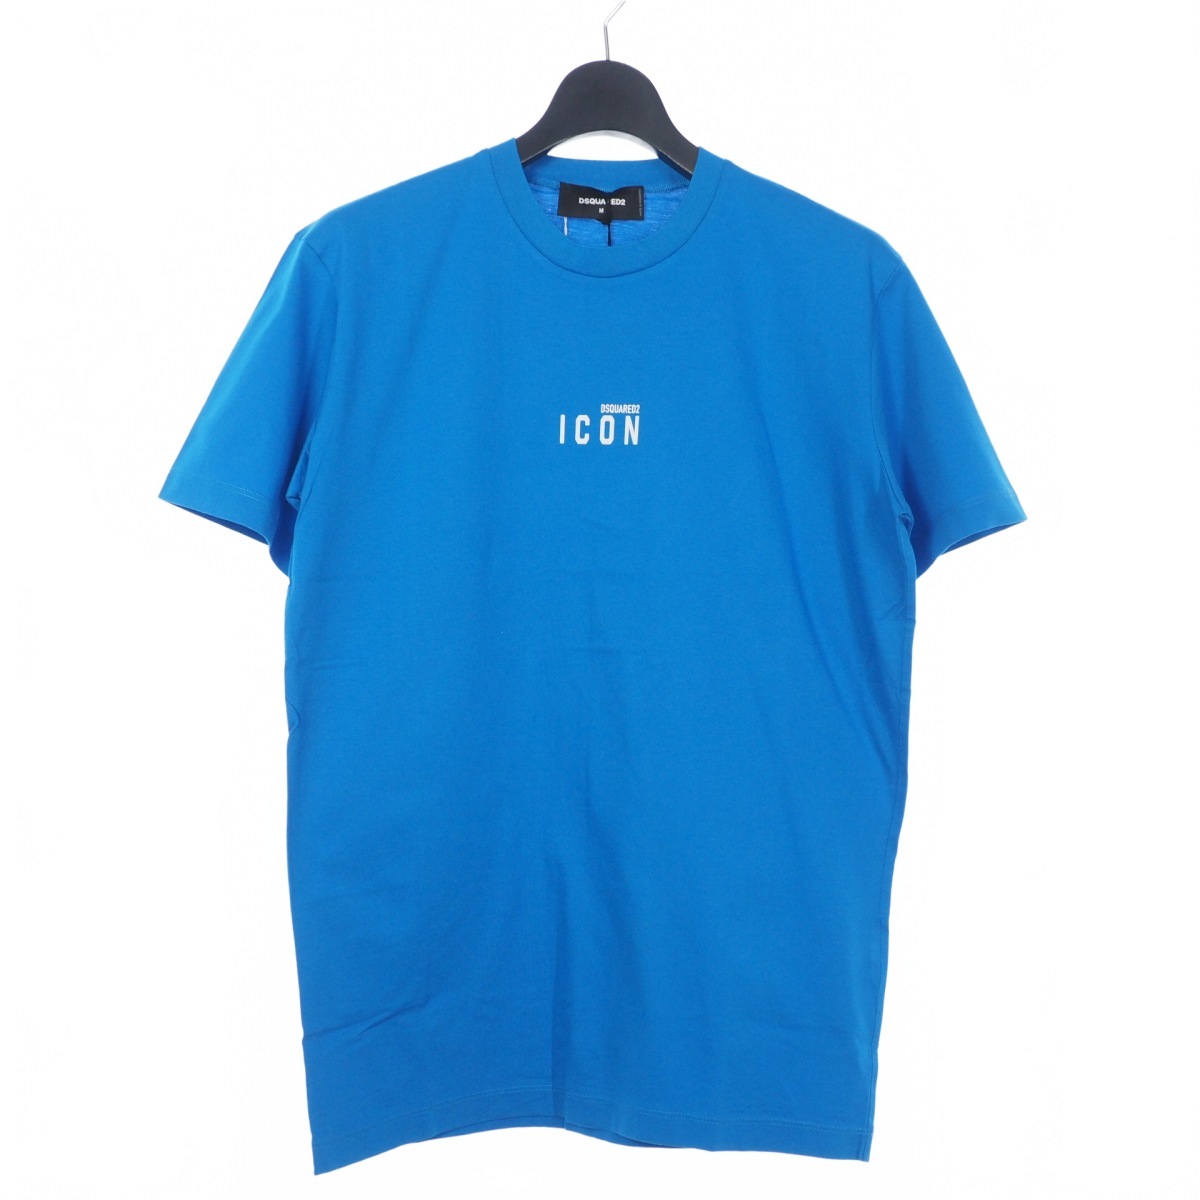 ディースクエアード DSQUARED2 22SS Icon Mini Logo Tシャツ カットソー 半袖 クルーネック M ブルー 青 S79GC0010 国内正規 メンズ_画像1